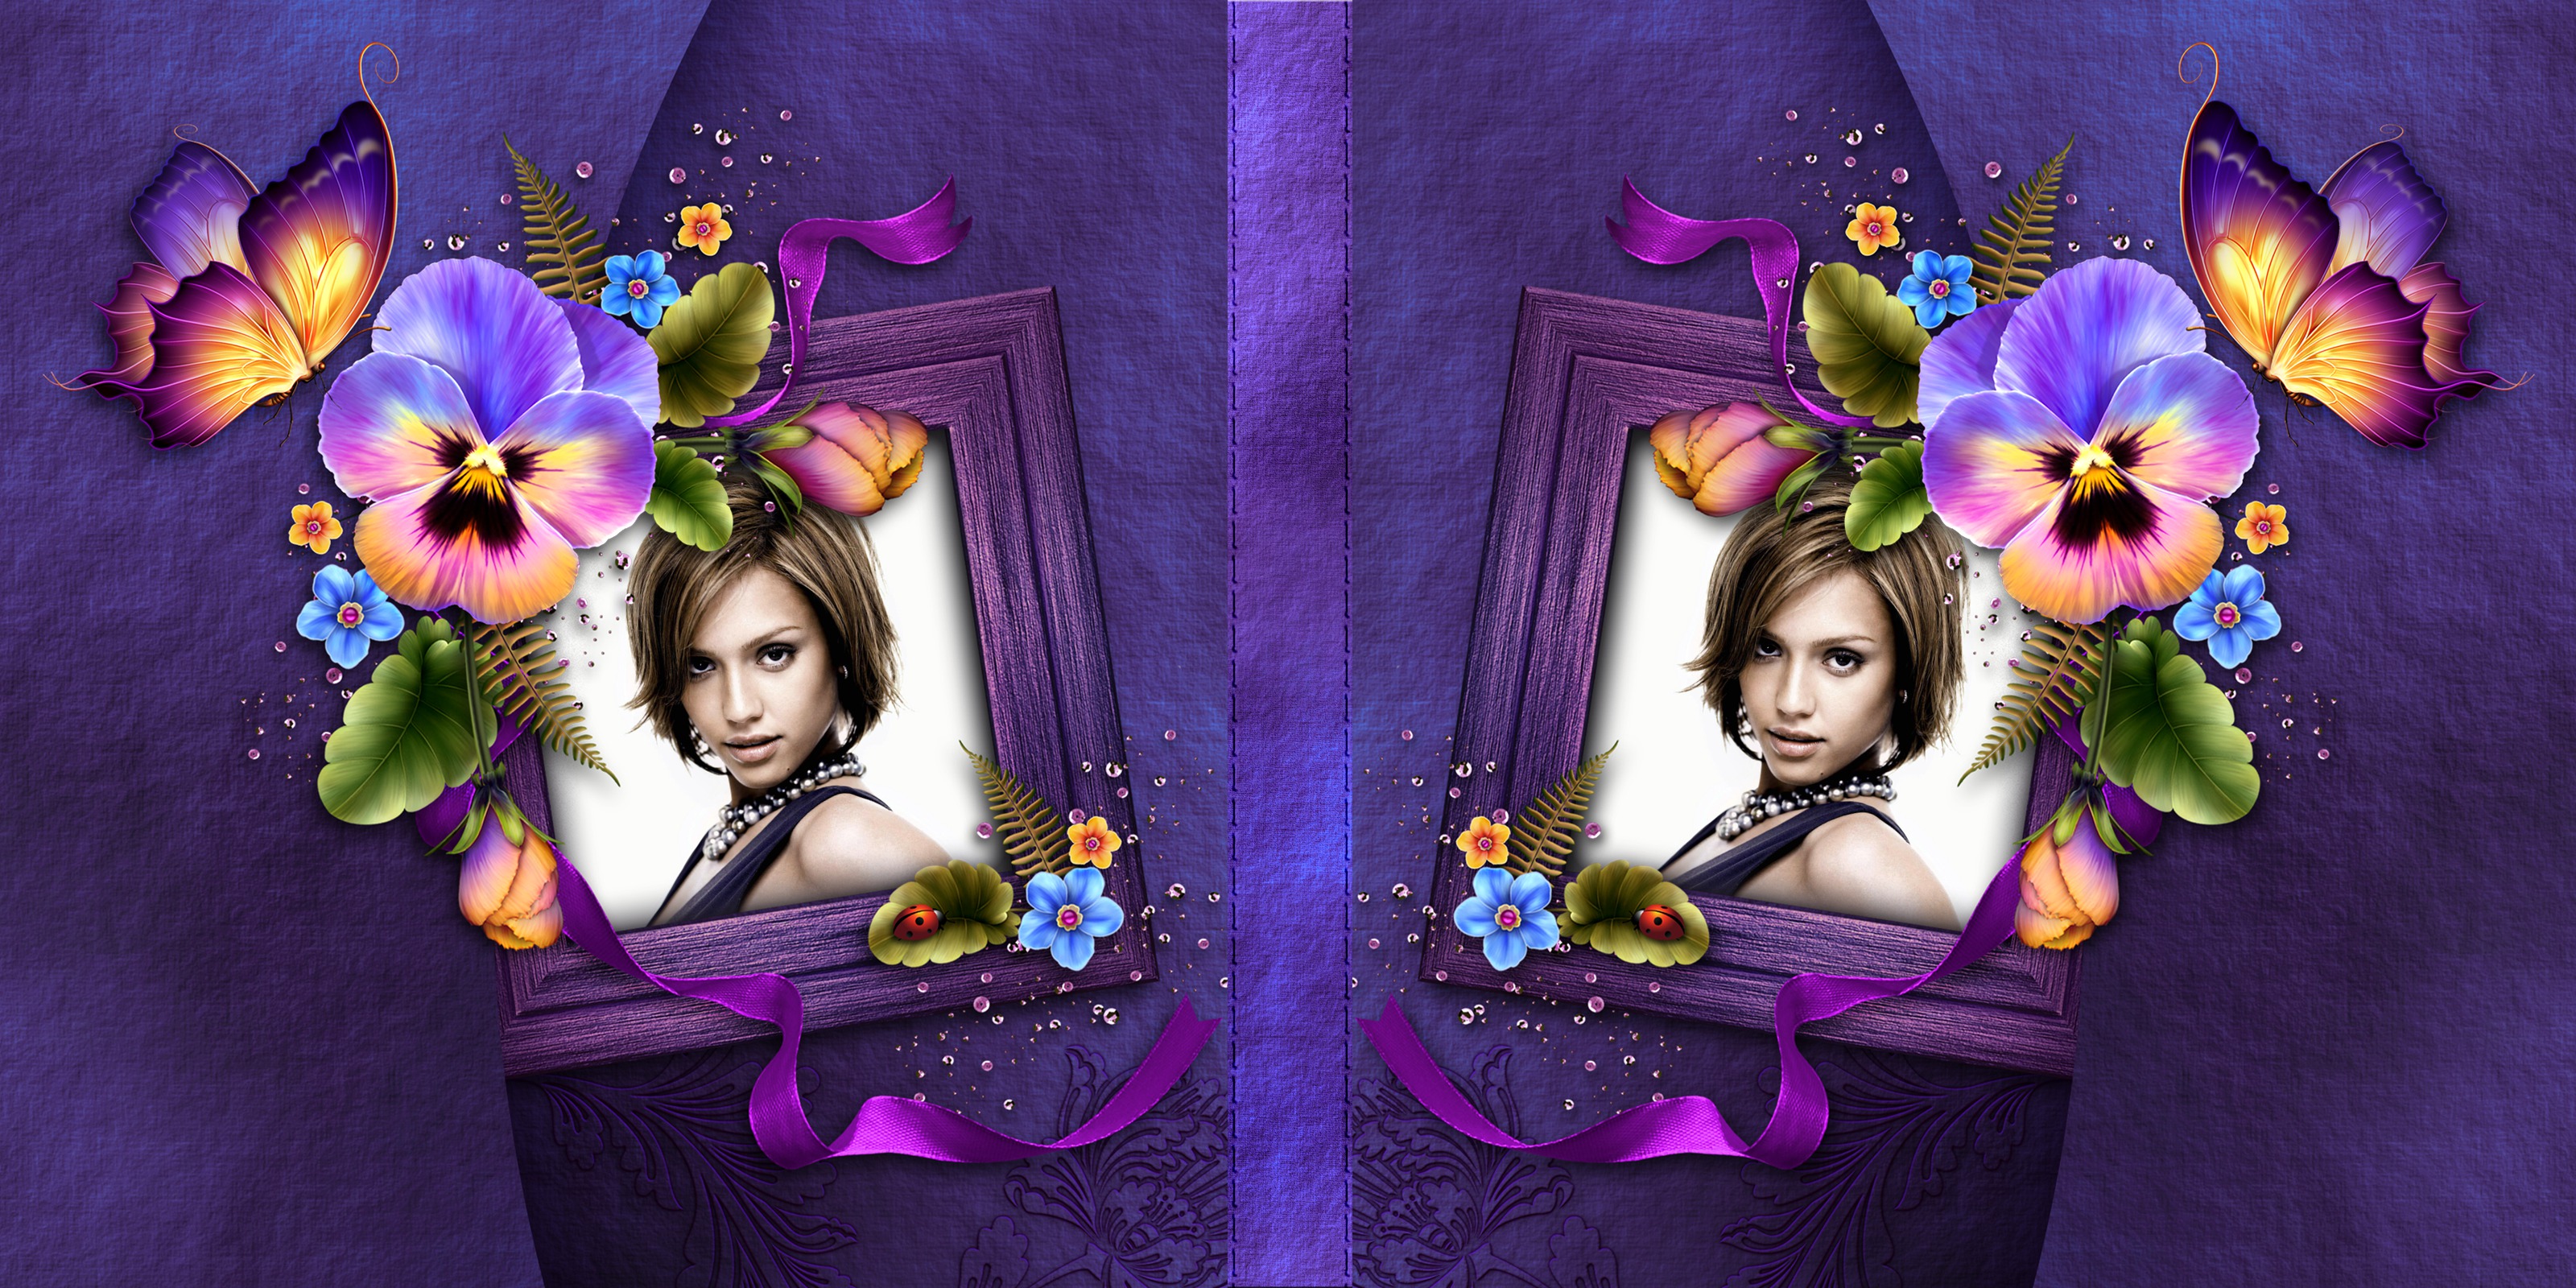 Copertina di libro viola con fiori #2 Fotomontaggio